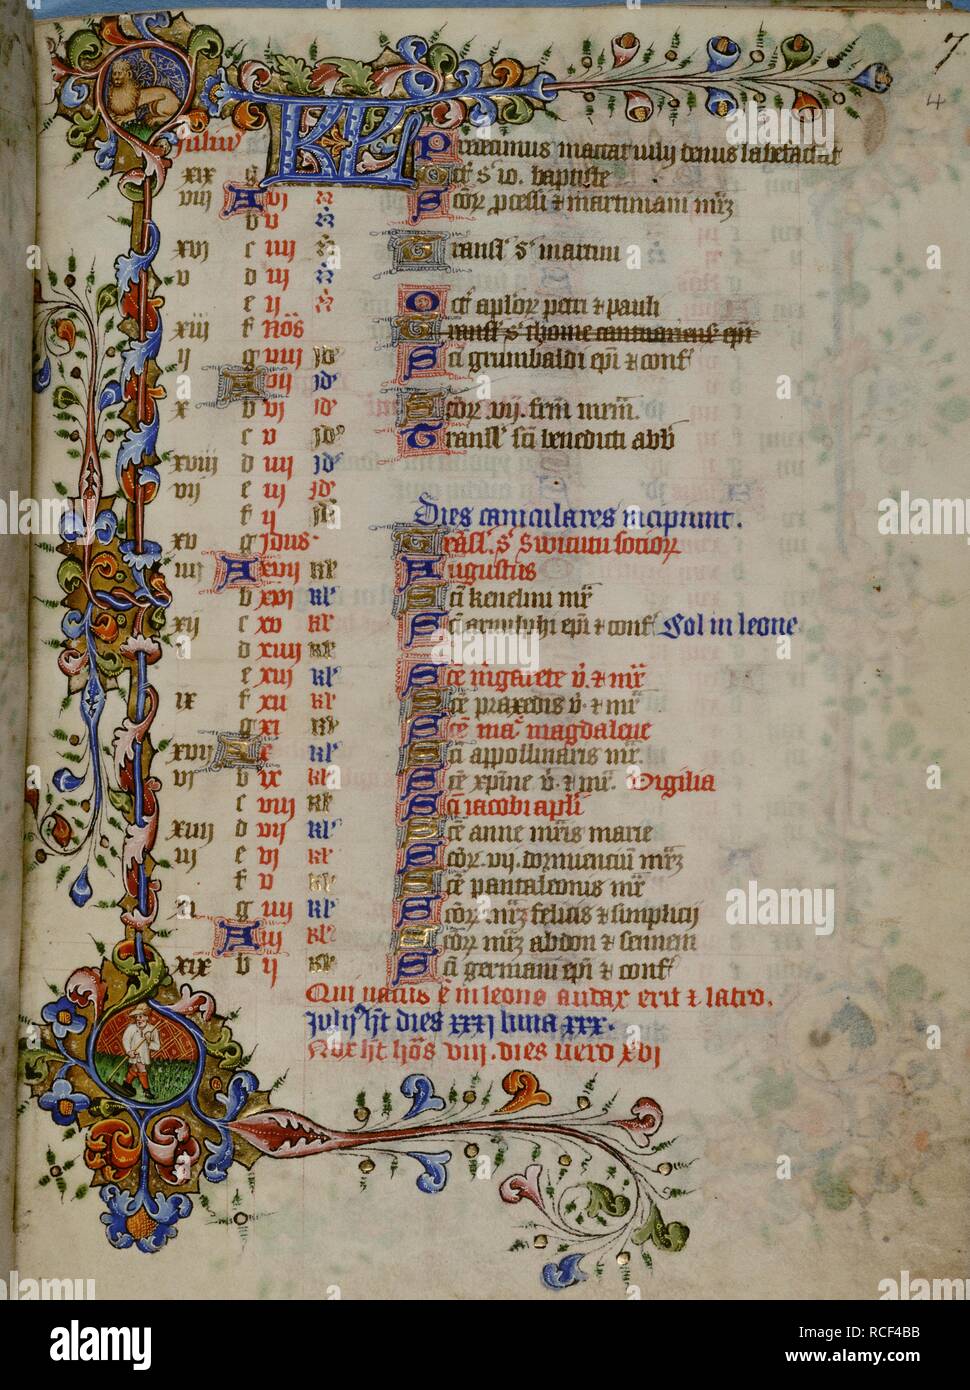 Kalenderblatt für Juli. Stunden von Elizabeth die Königin. England [London]; ca. 1420-1430. Quelle: Hinzufügen. 50001, f 4. Sprache: Latein. Stockfoto